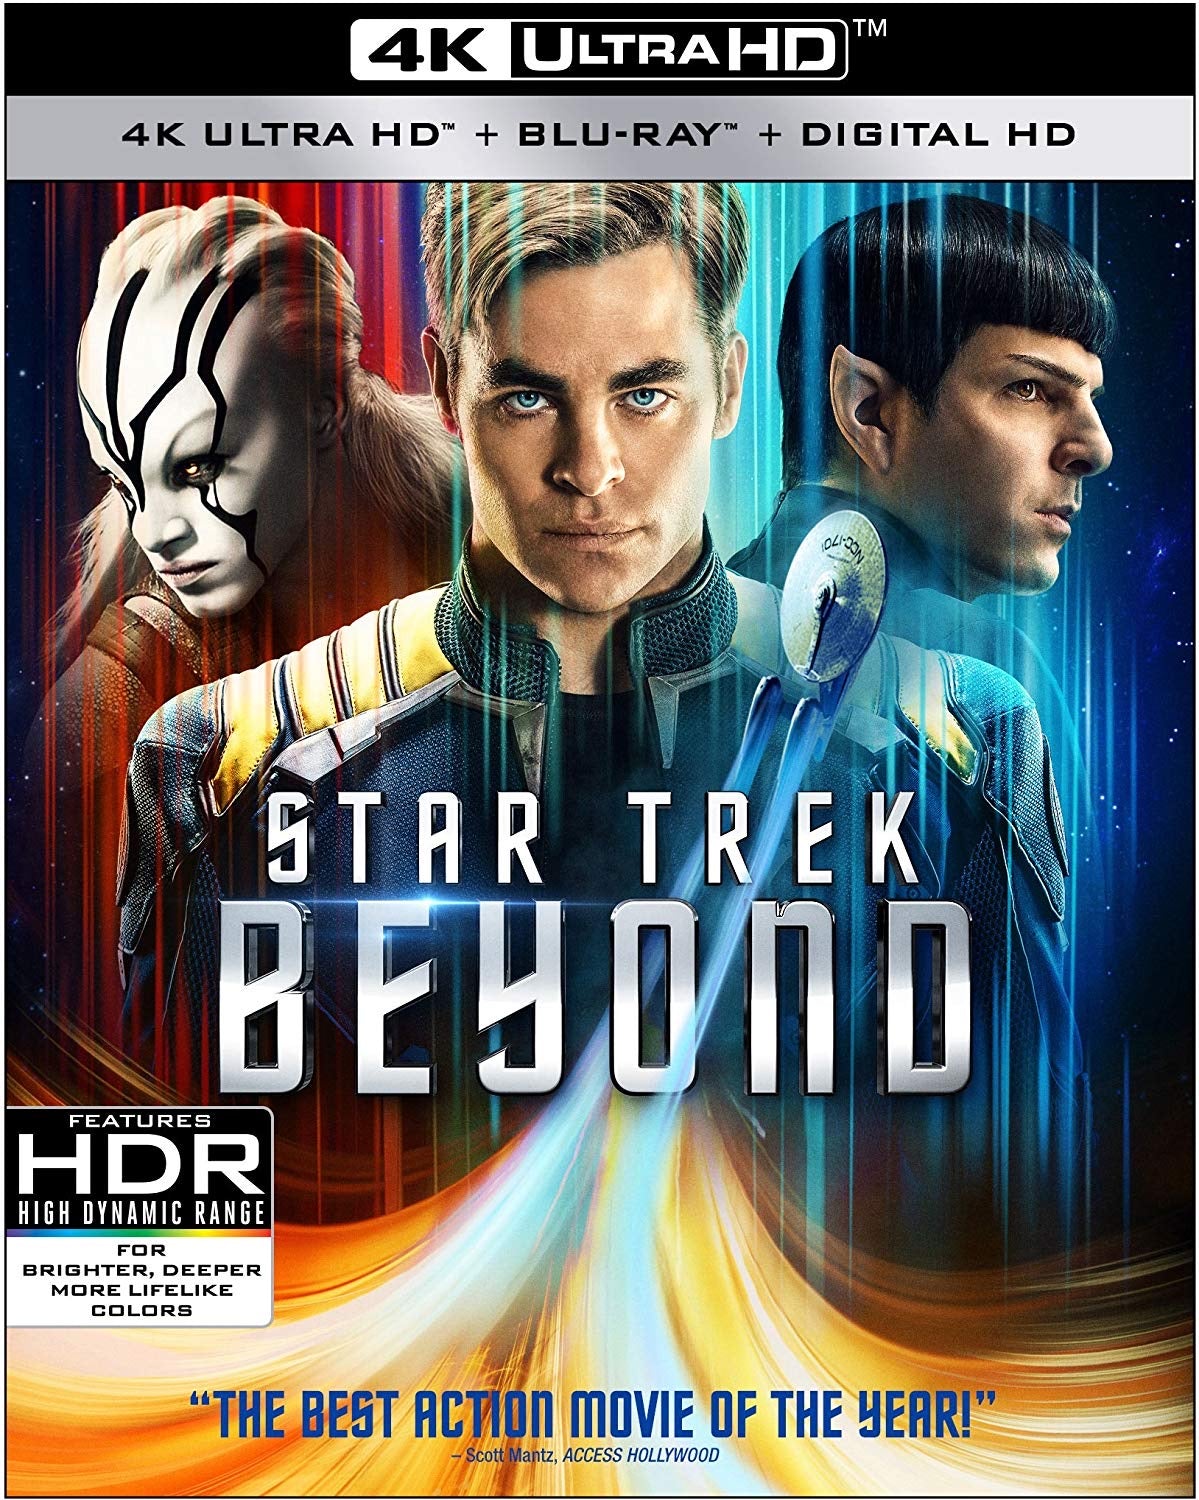 Star Trek: Beyond (2016) iTunes 4K redemption only